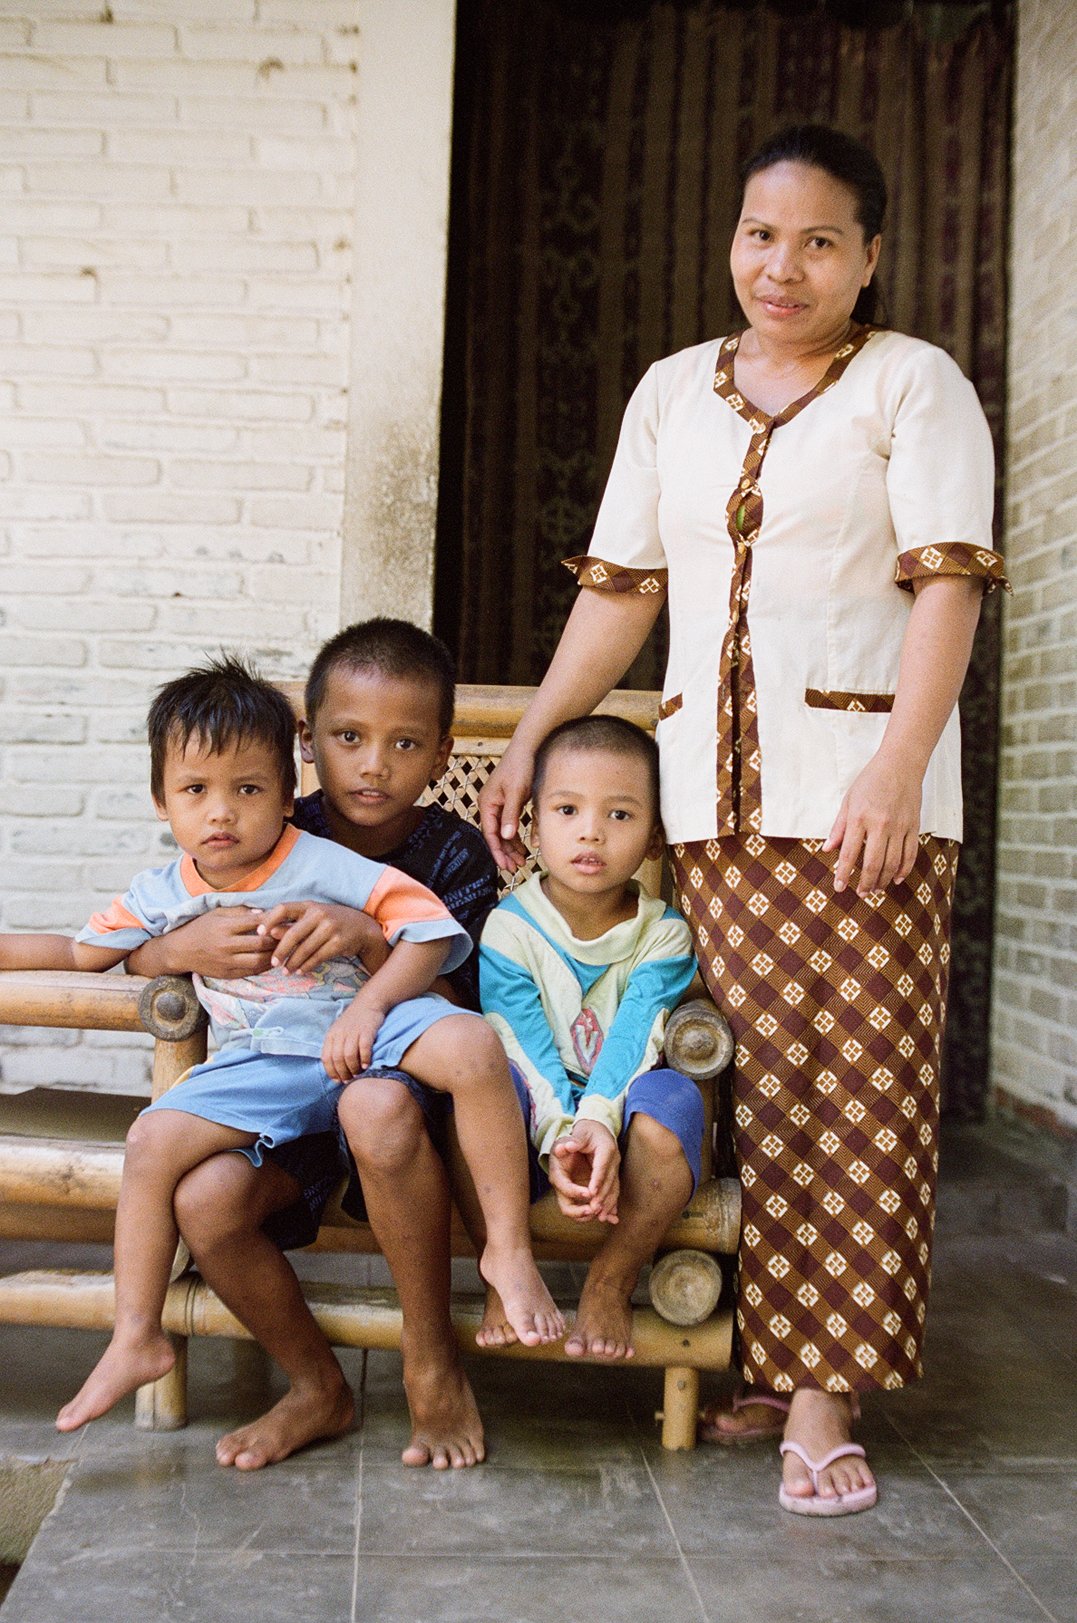 090721-Bali-Candi_Dasa_Sadras_wife-Wife_and_kids_2-F.jpg